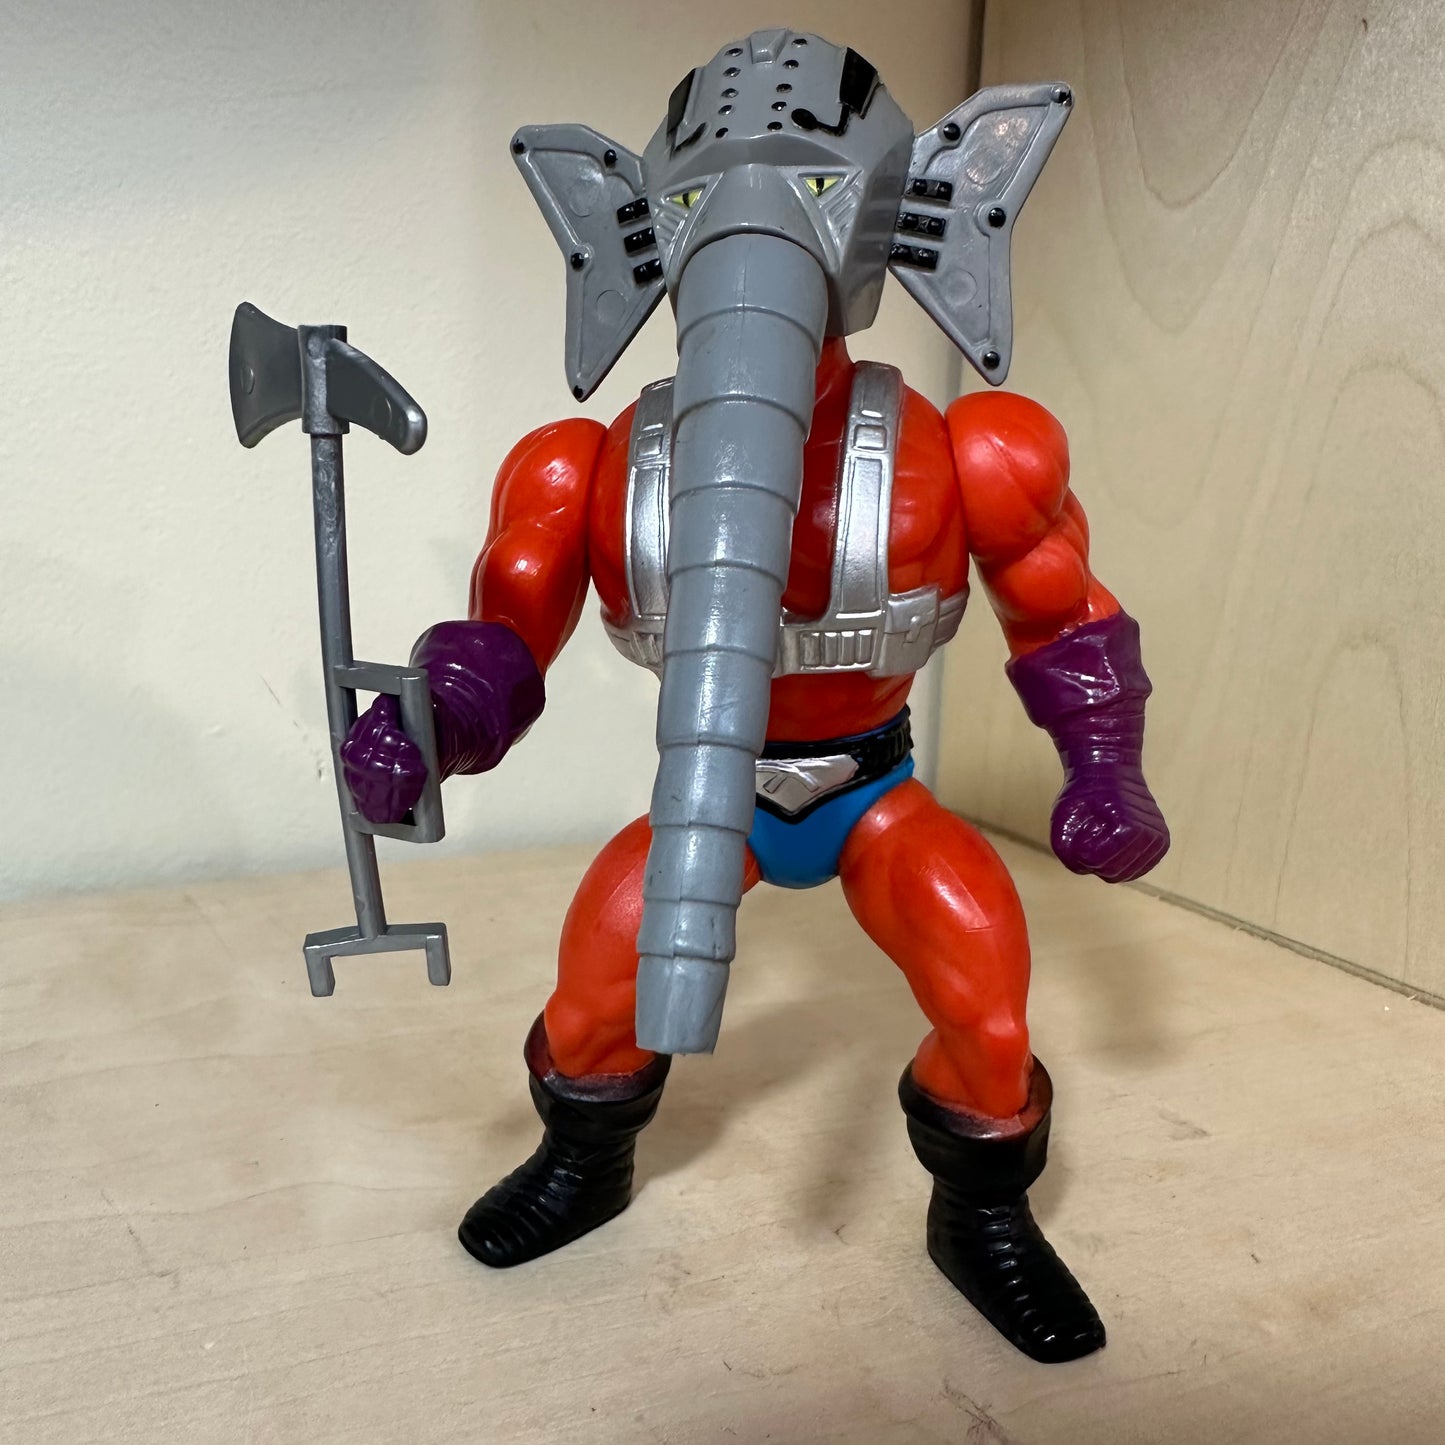 1986 MOTU Snout Spout Complete Vintage Master’s of the Universe Action Figure He-Man Action Figure